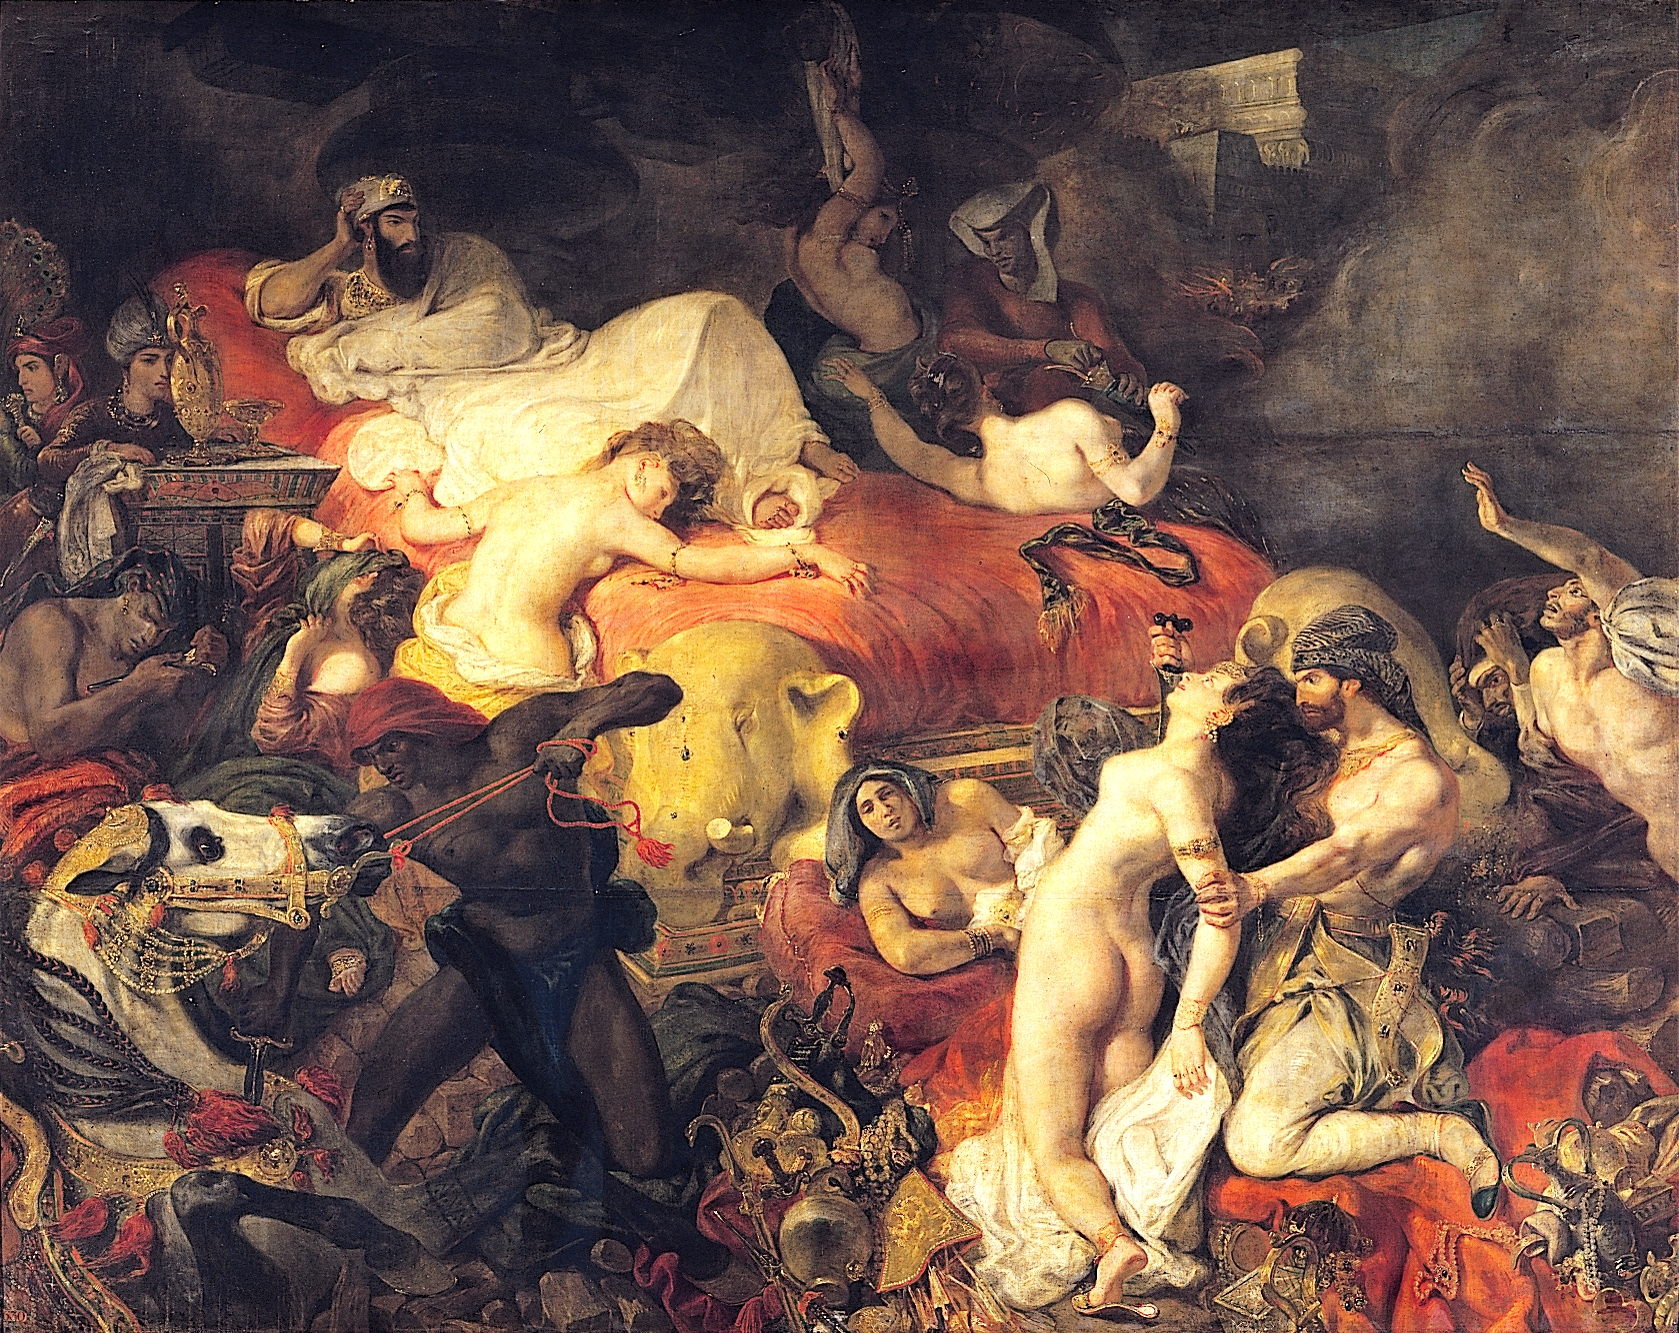 La muerte de Sardanápalo by Eugène Delacroix - 1827 - 392 x 496 cm Musée du Louvre